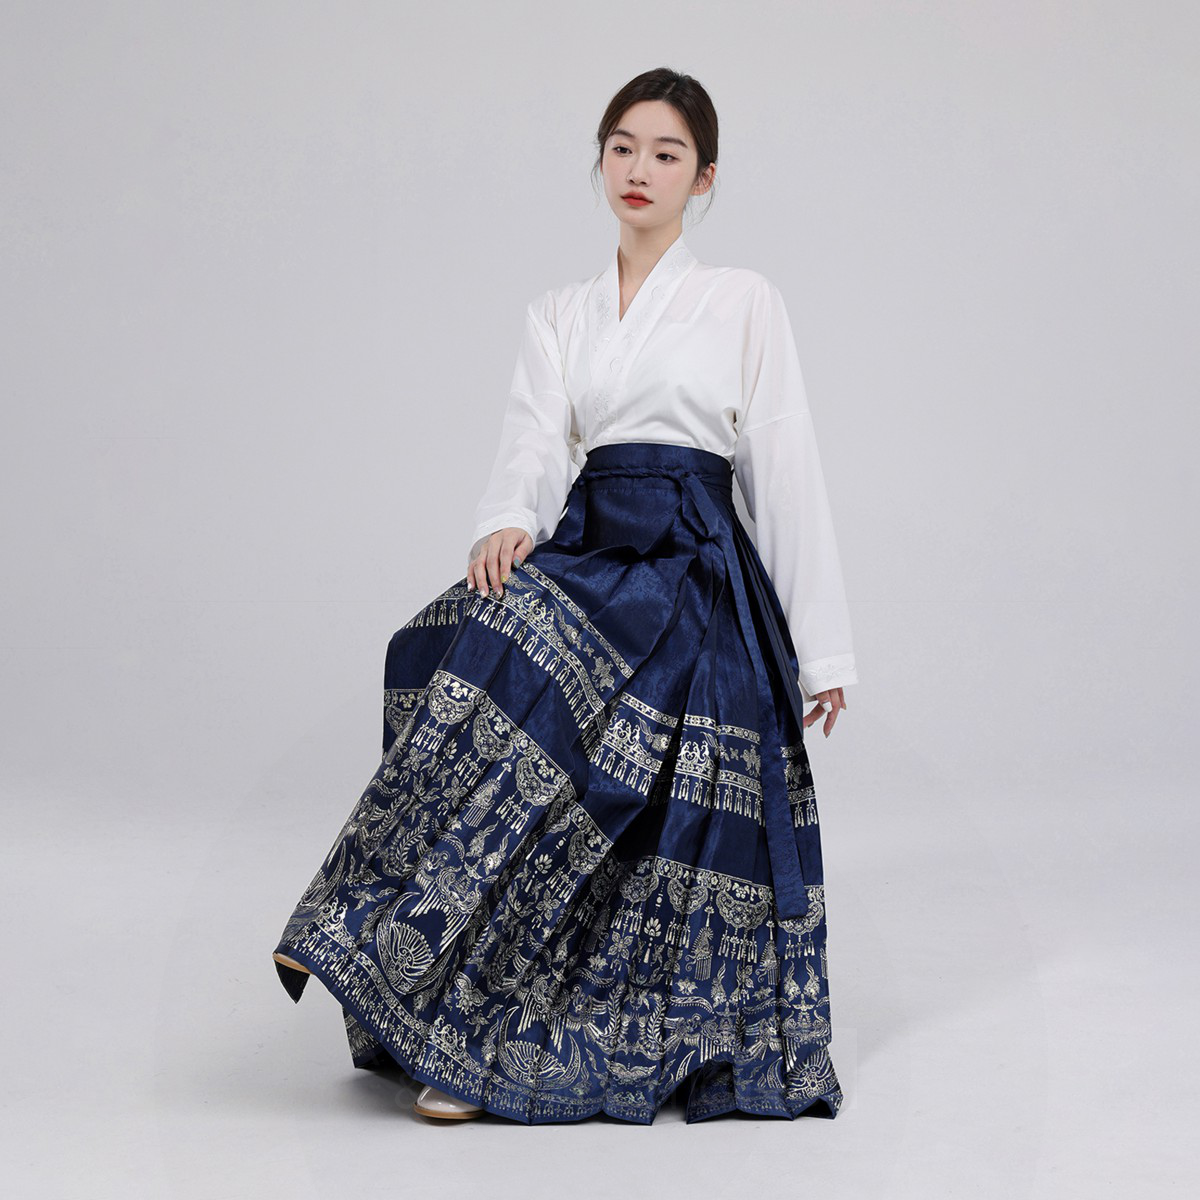 Hmong Silver Heritage Skirt